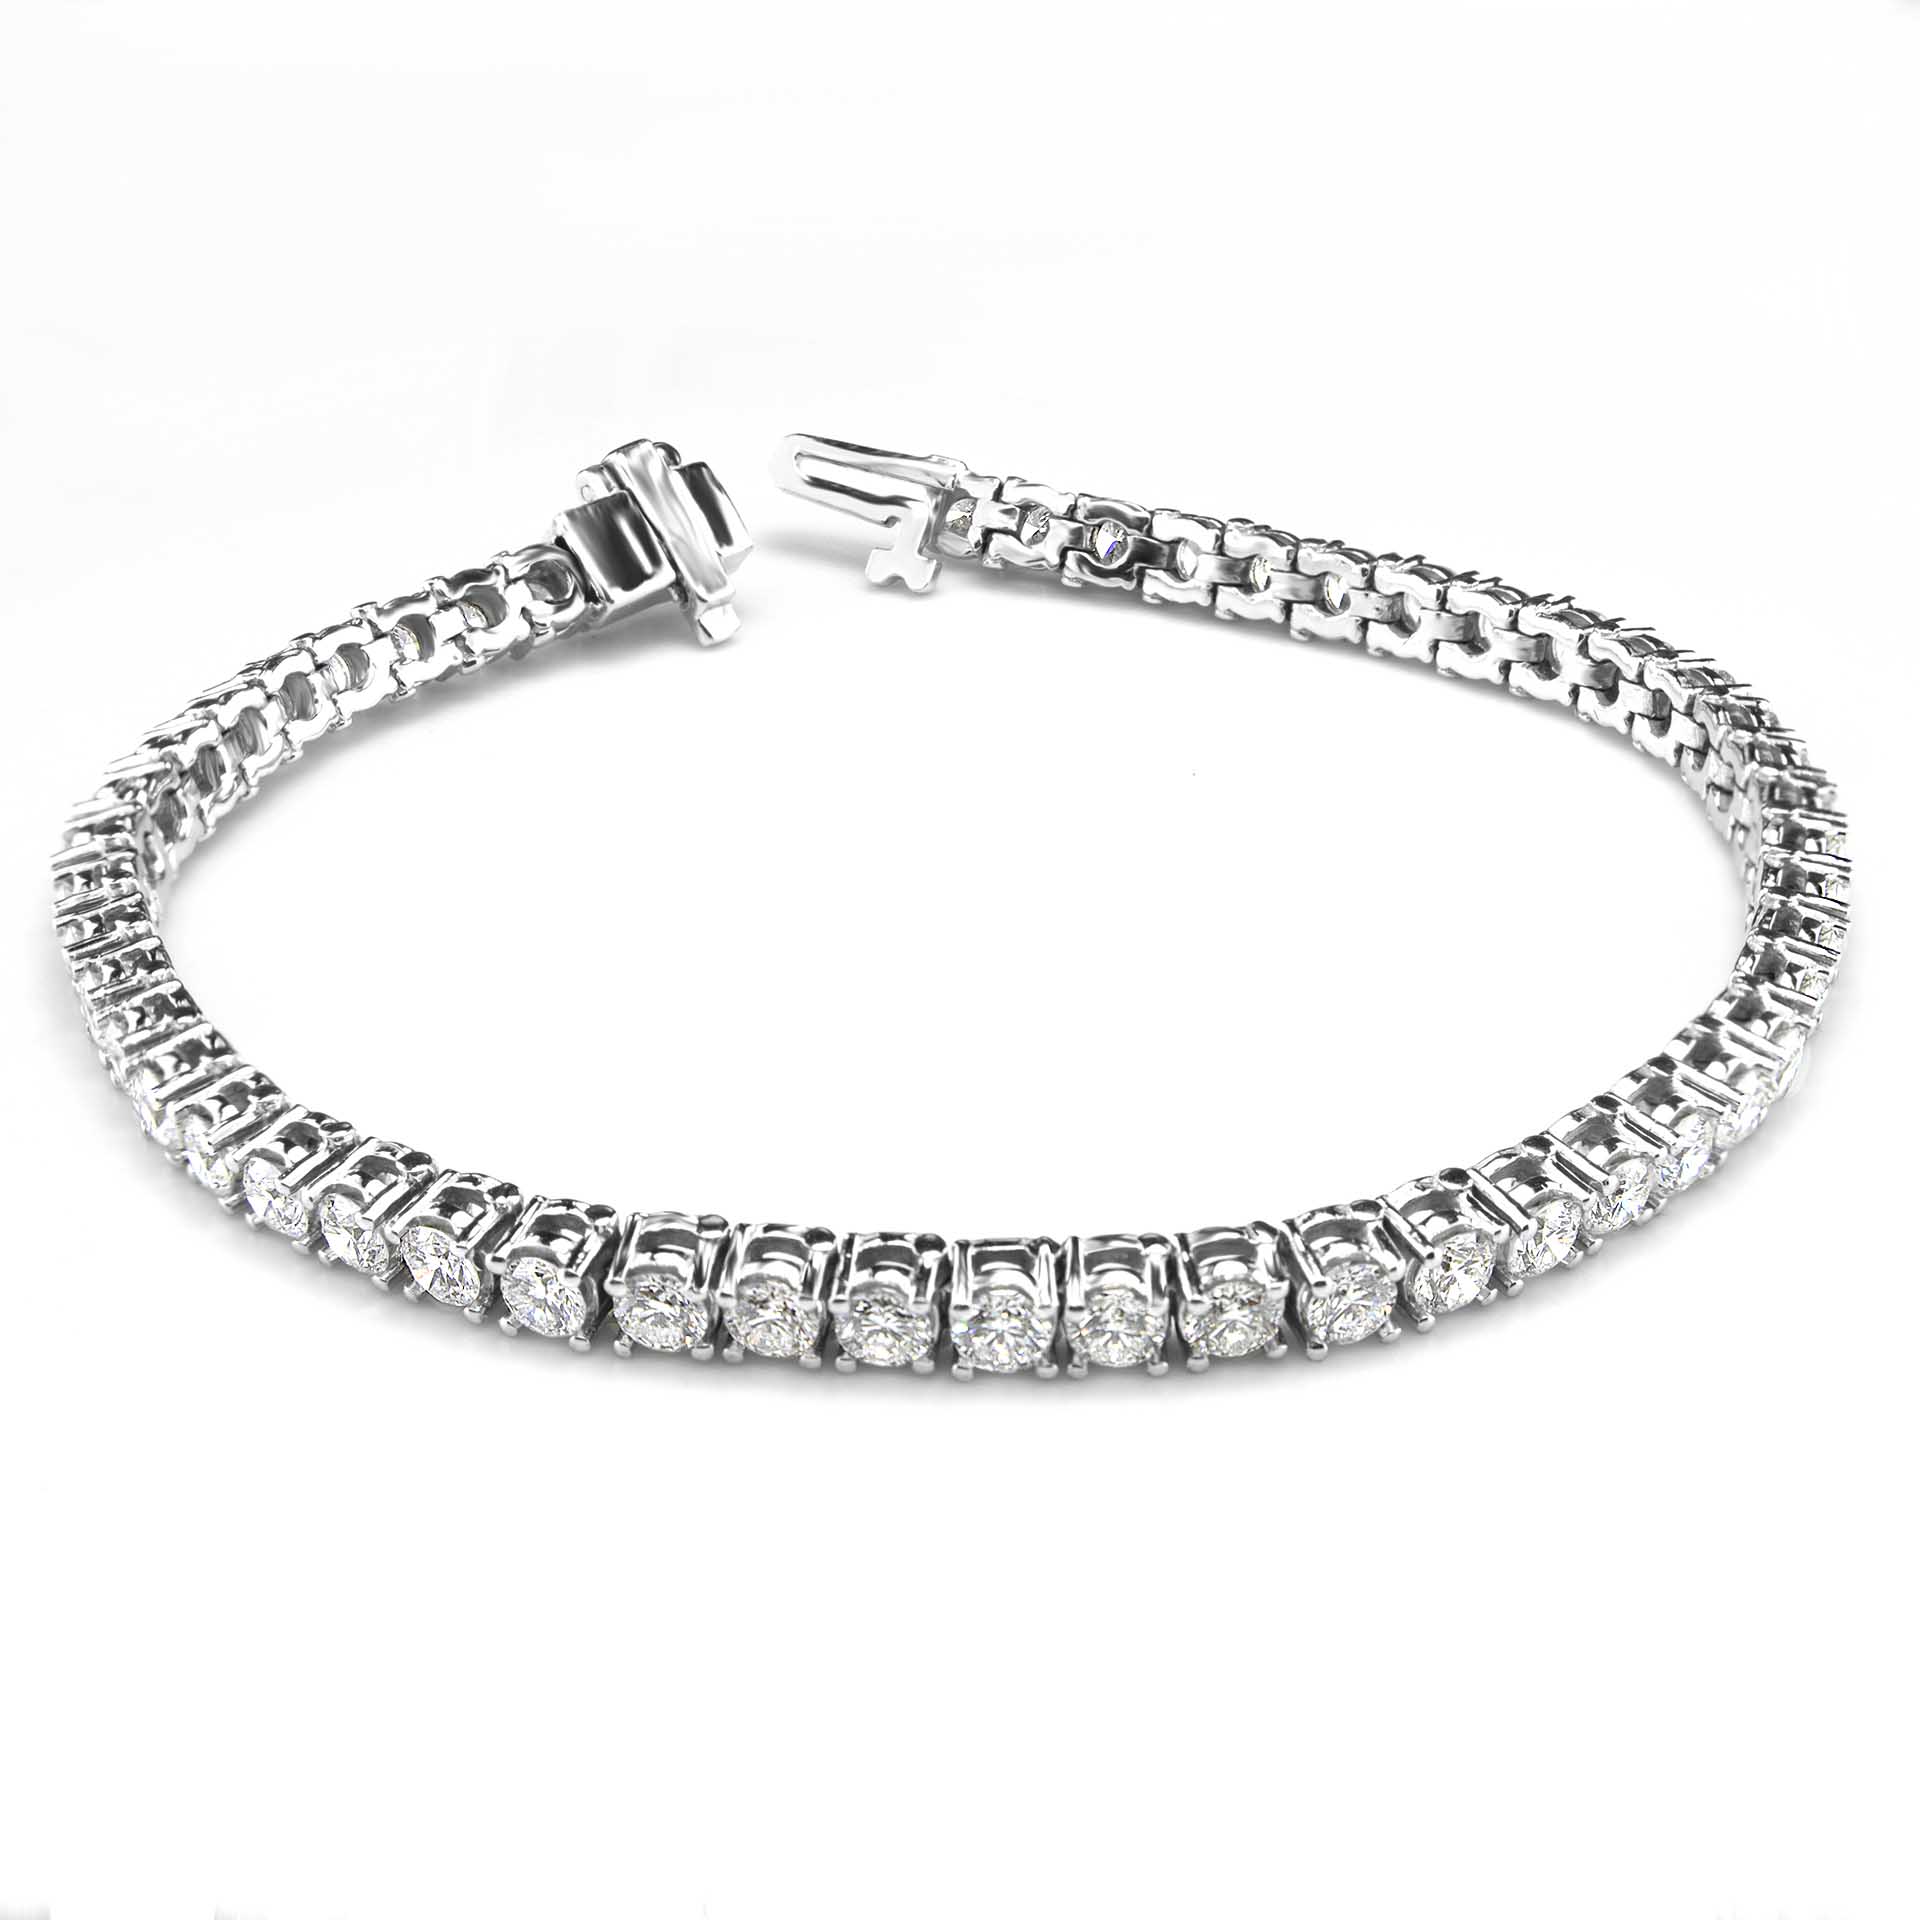 4 Prong Diamond Tennis Bracelet 2.0 Carats - 21.0 Carats Gold, Platinum ...